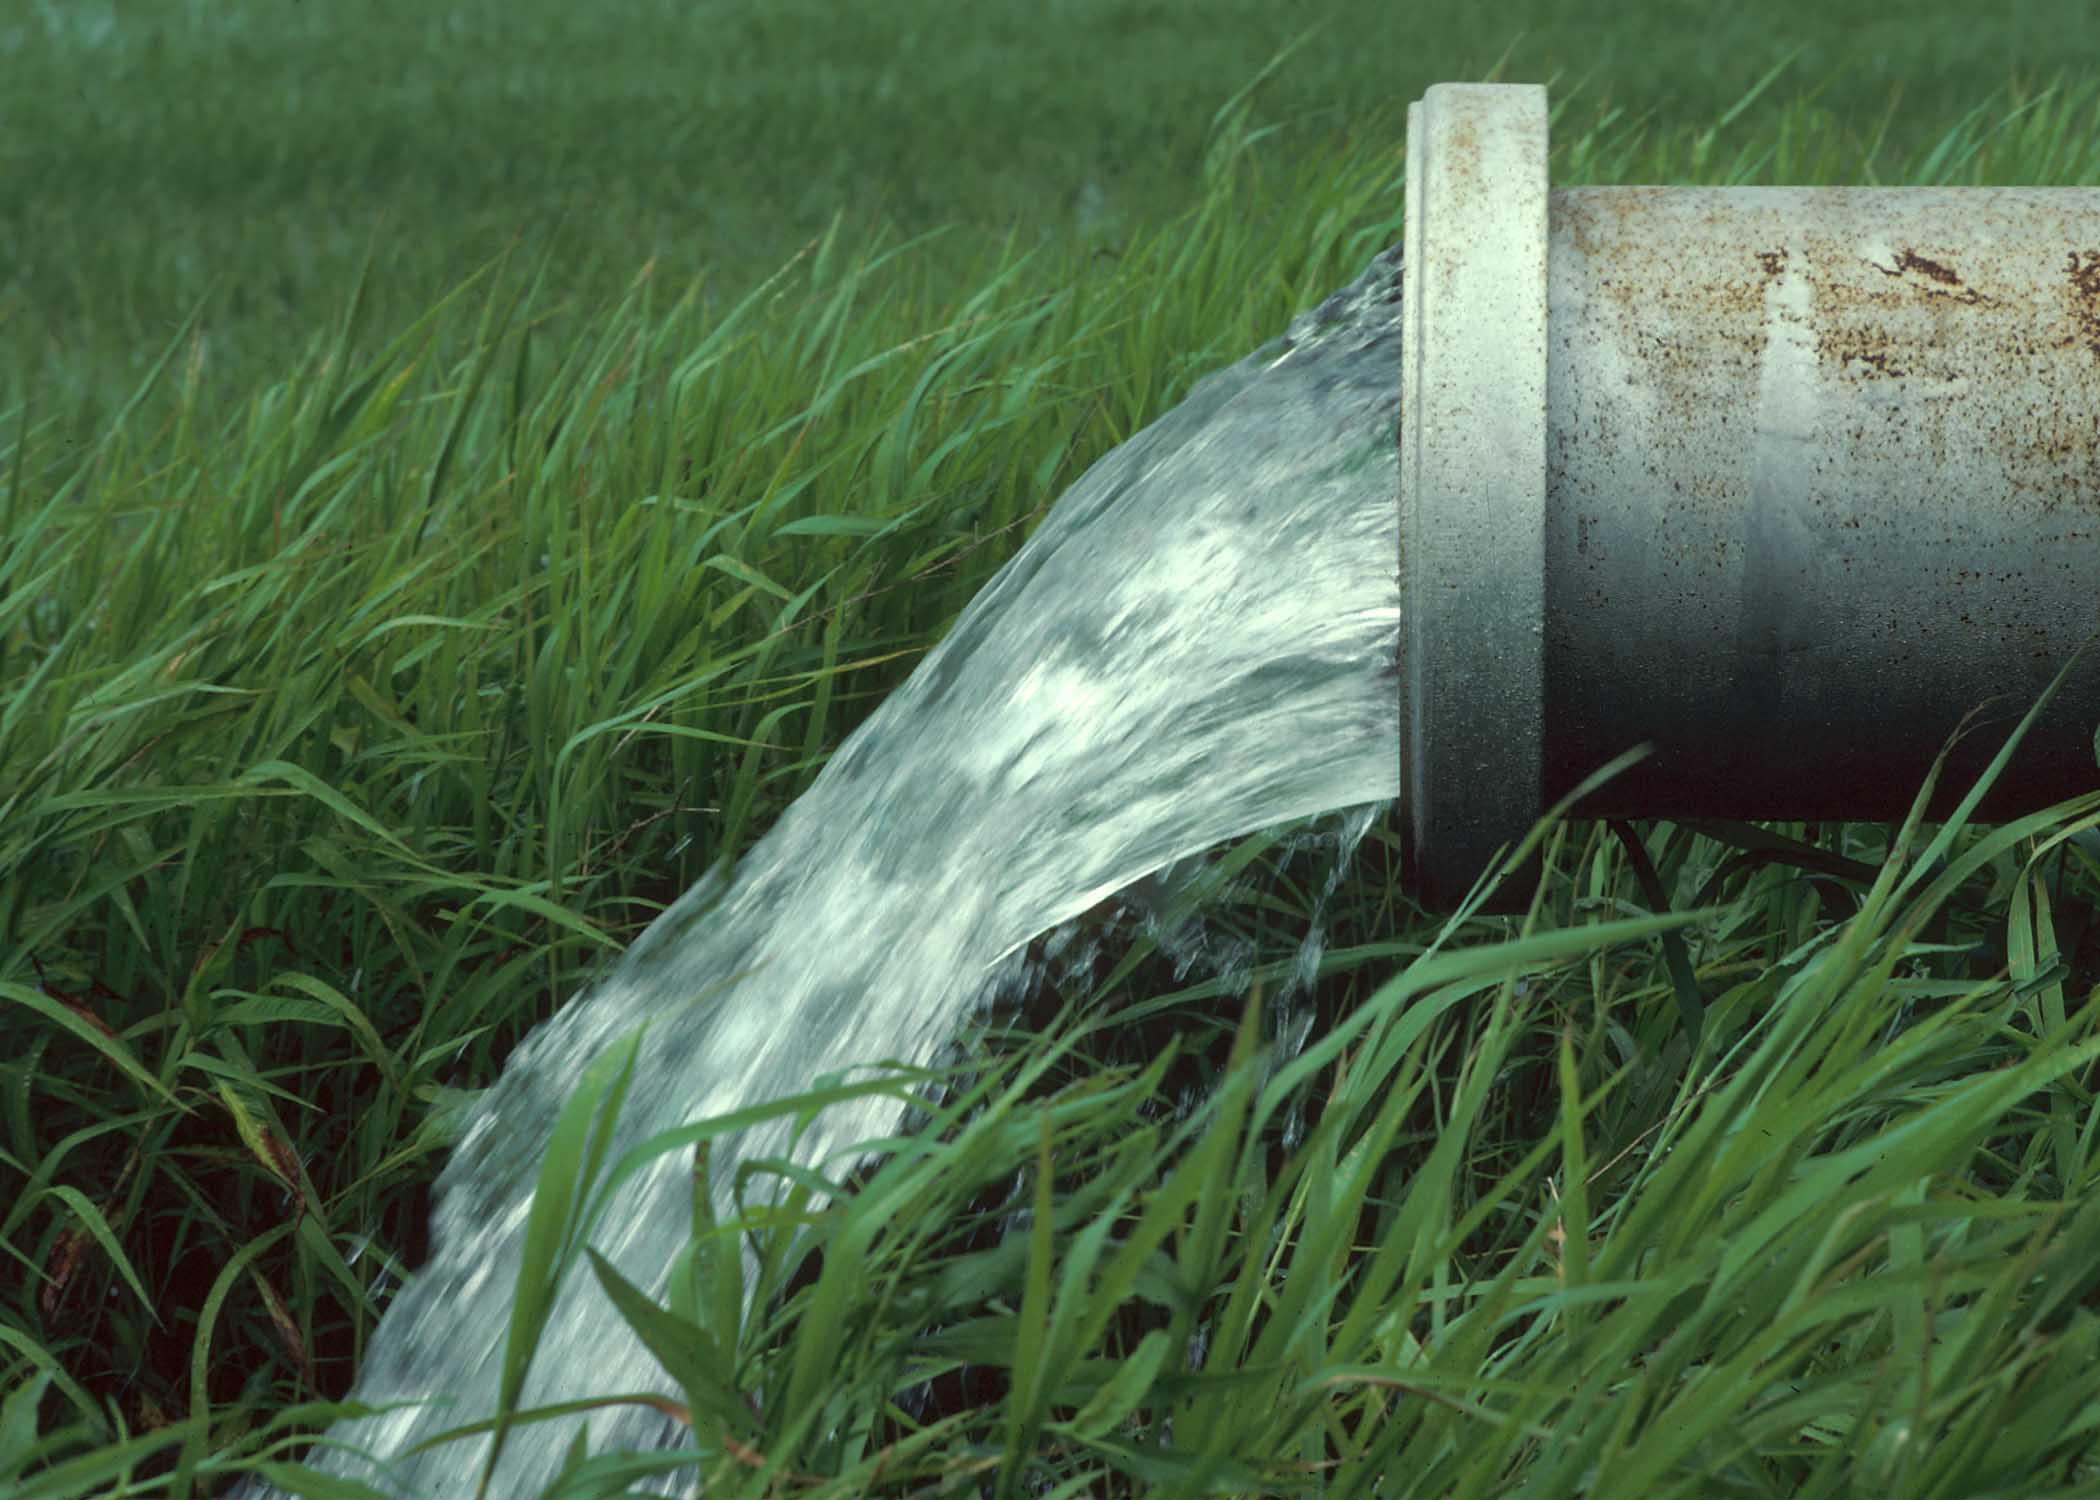  93درصد آب شرب کشور در بخش کشاورزی مصرف می شود